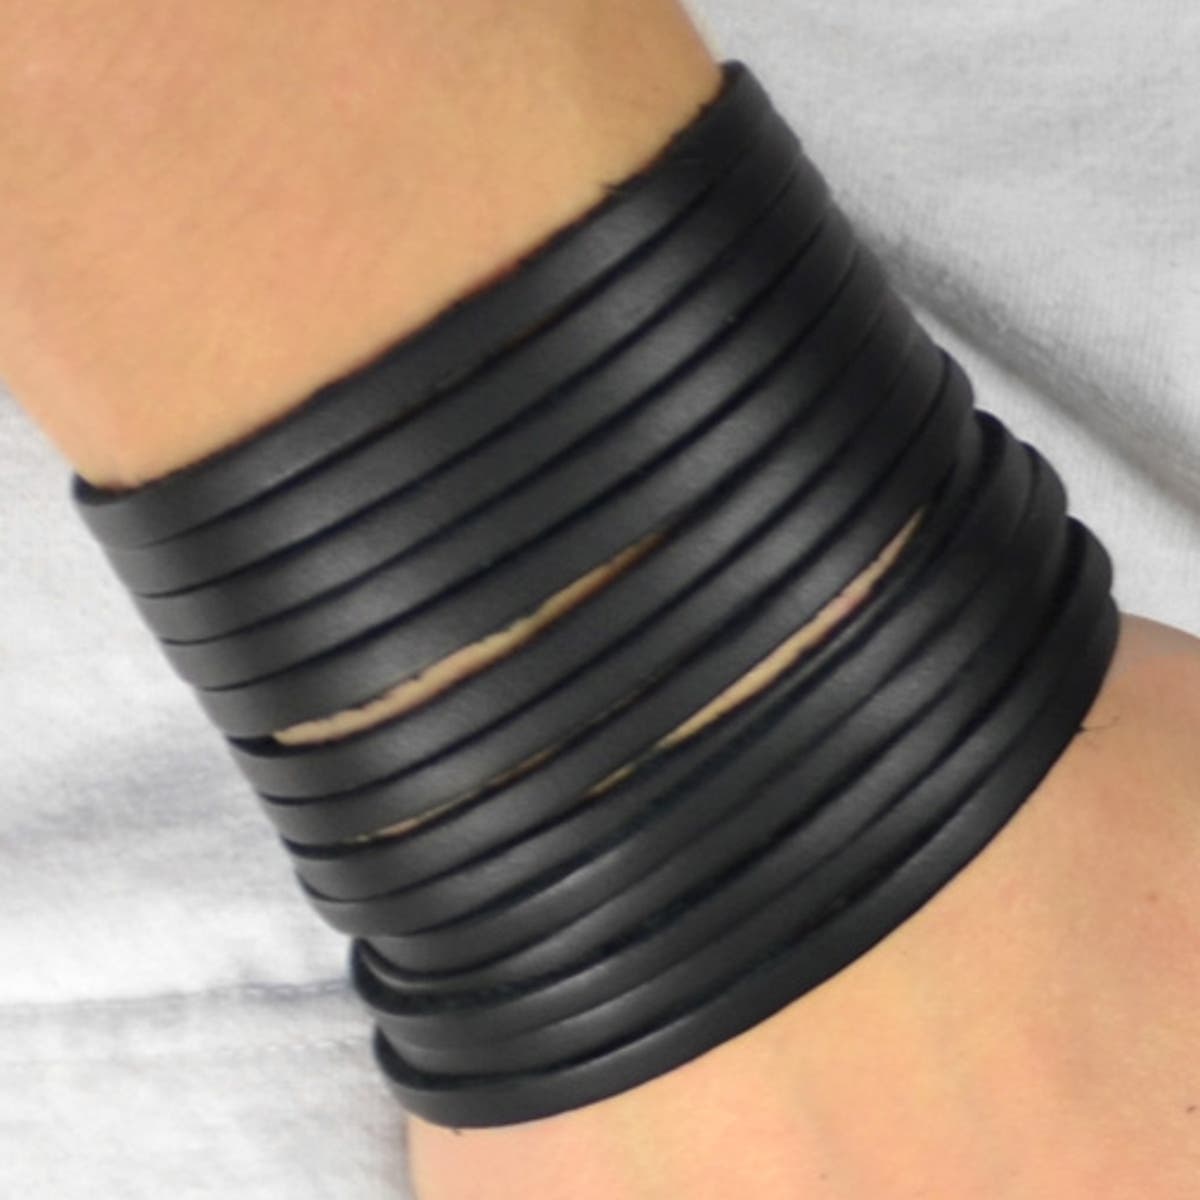 Men's Wide Leather Bracelets